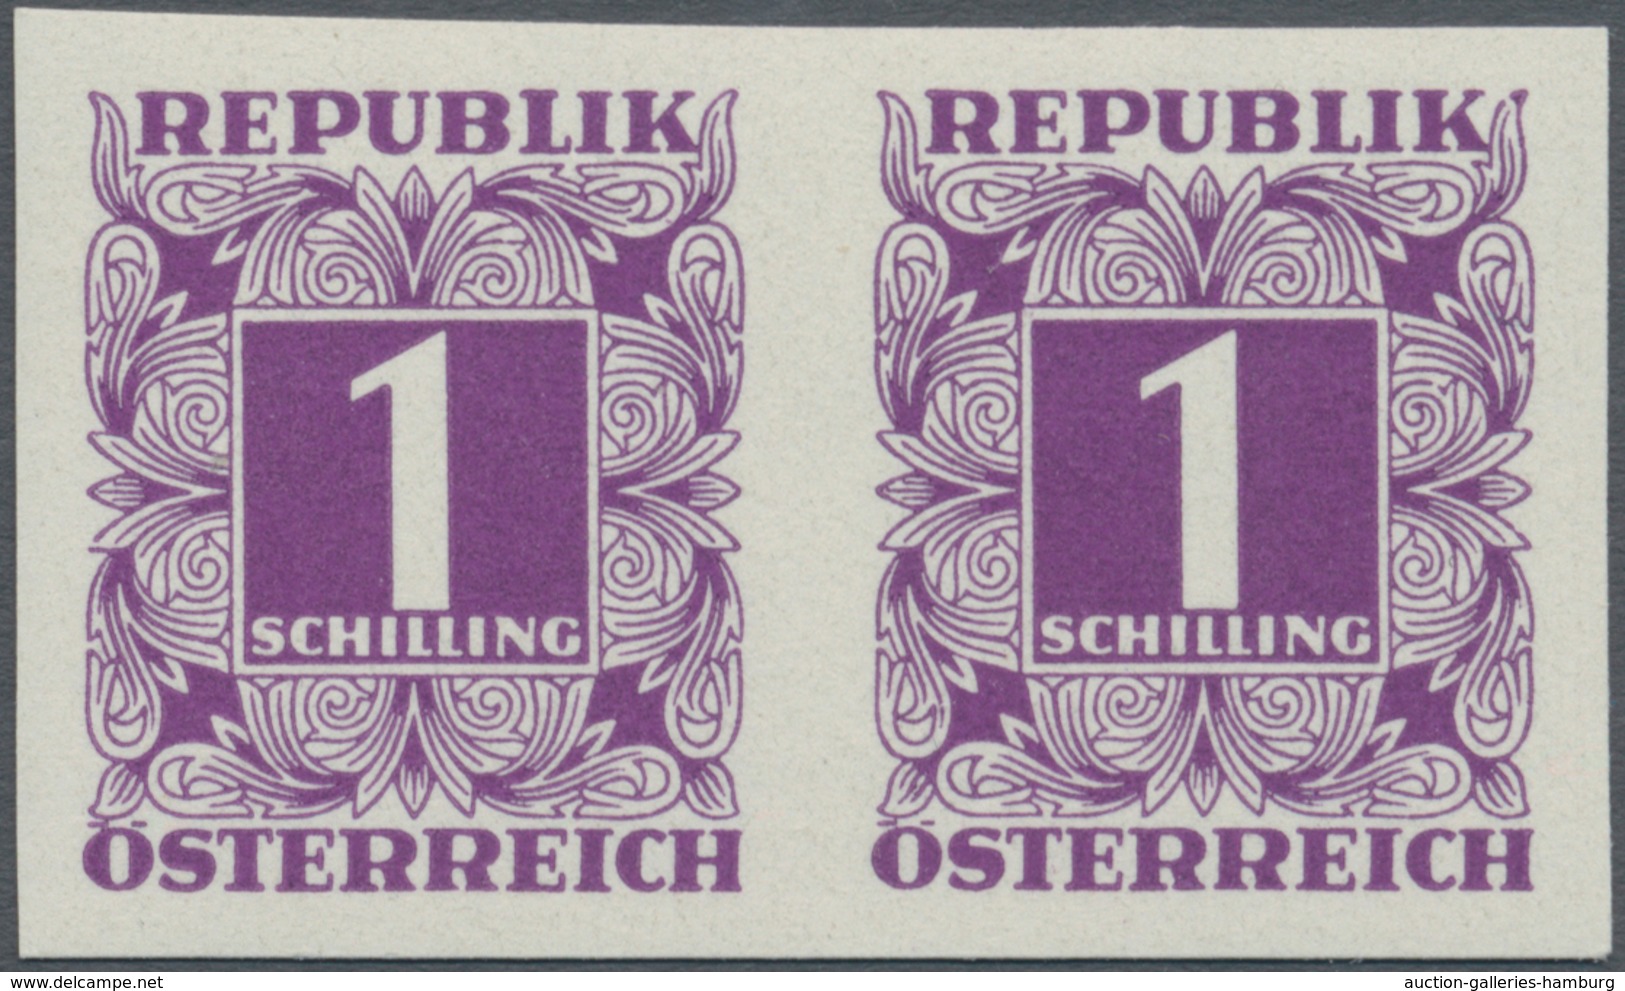 Österreich - Portomarken: 1949/1953, Ziffern 10 Gr. bis 5 Sch., elf Werte UNGEZÄHNT in waagerechten